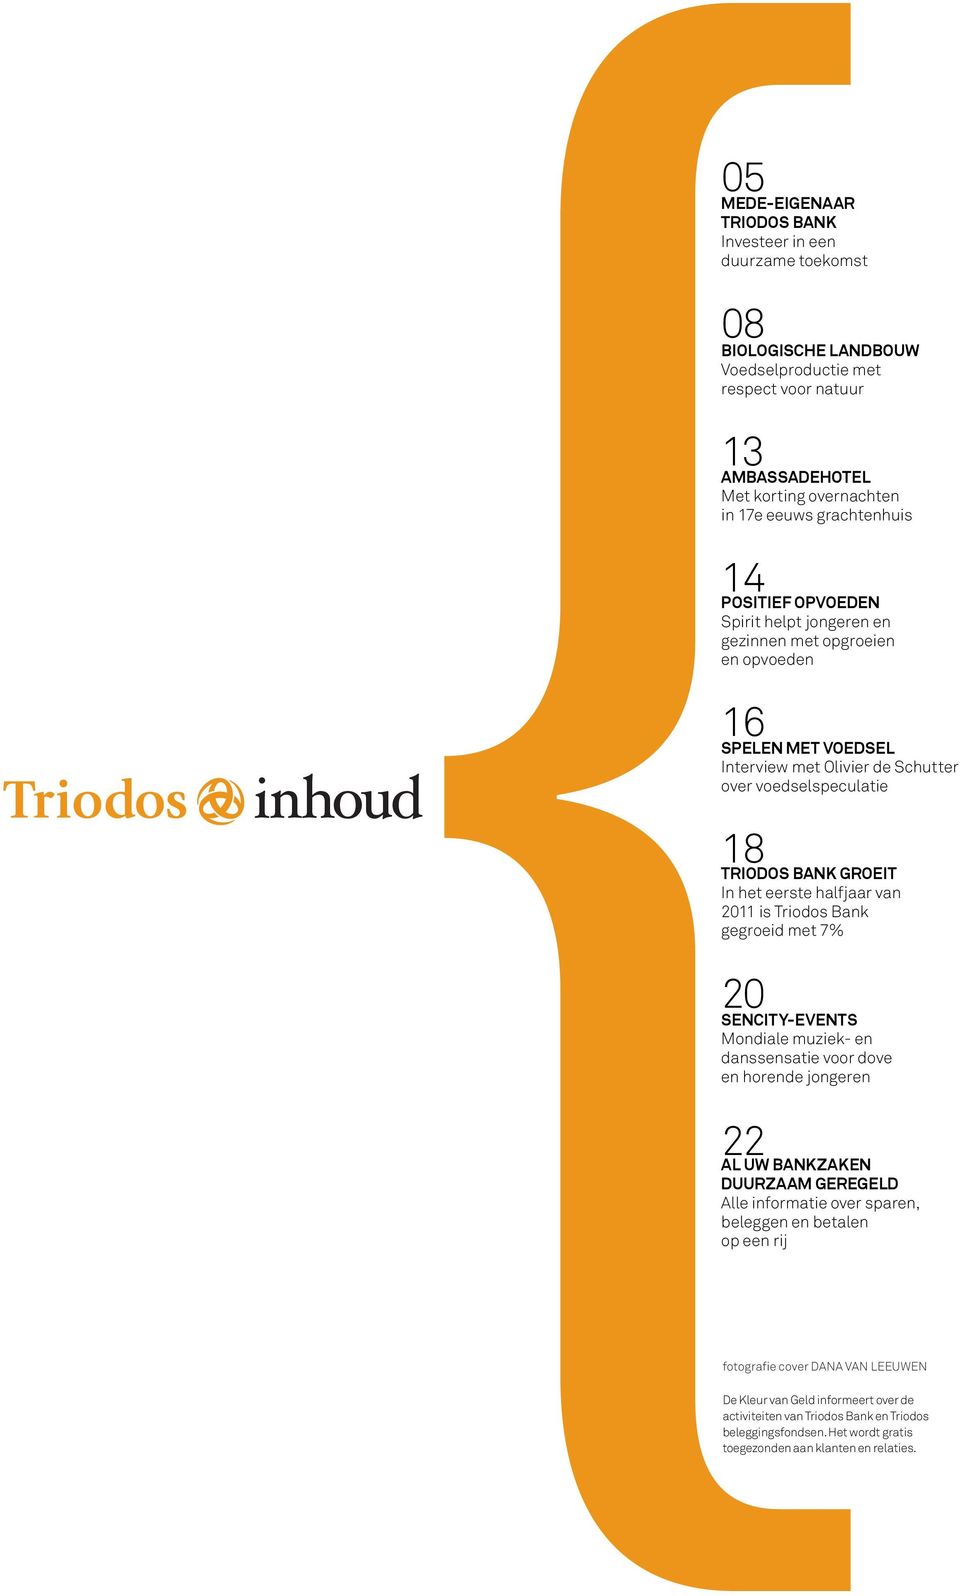 eerste halfjaar van 2011 is Triodos Bank gegroeid met 7% 20 sencity-events Mondiale muziek- en danssensatie voor dove en horende jongeren 22 al uw Bankzaken duurzaam geregeld Alle informatie over